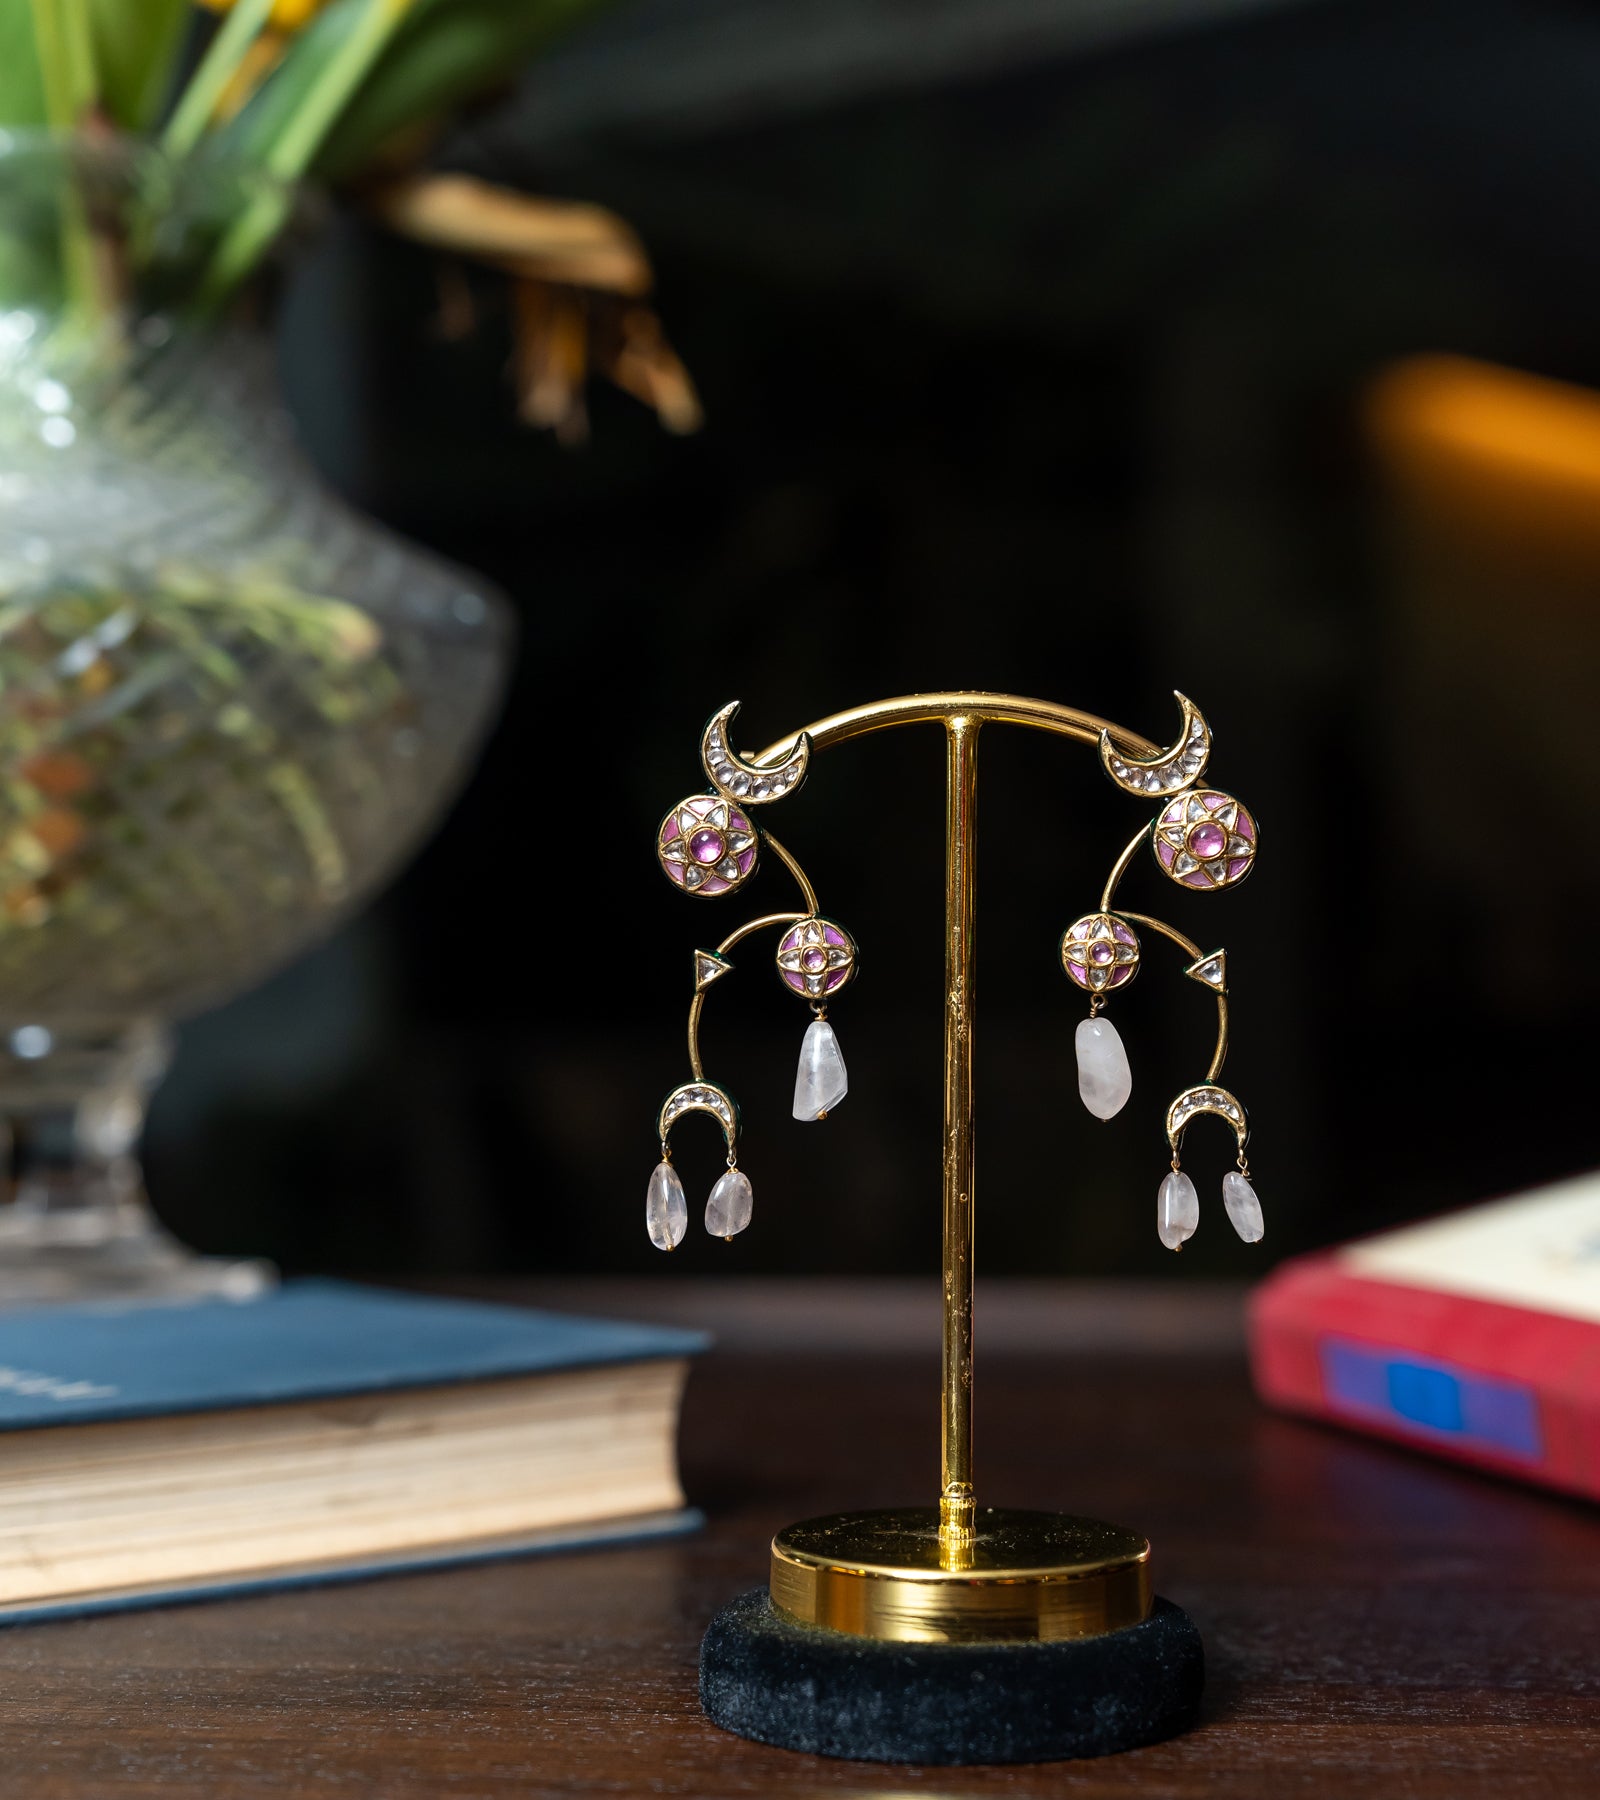 Indian Festive Earrings by UNCUT Jewelry